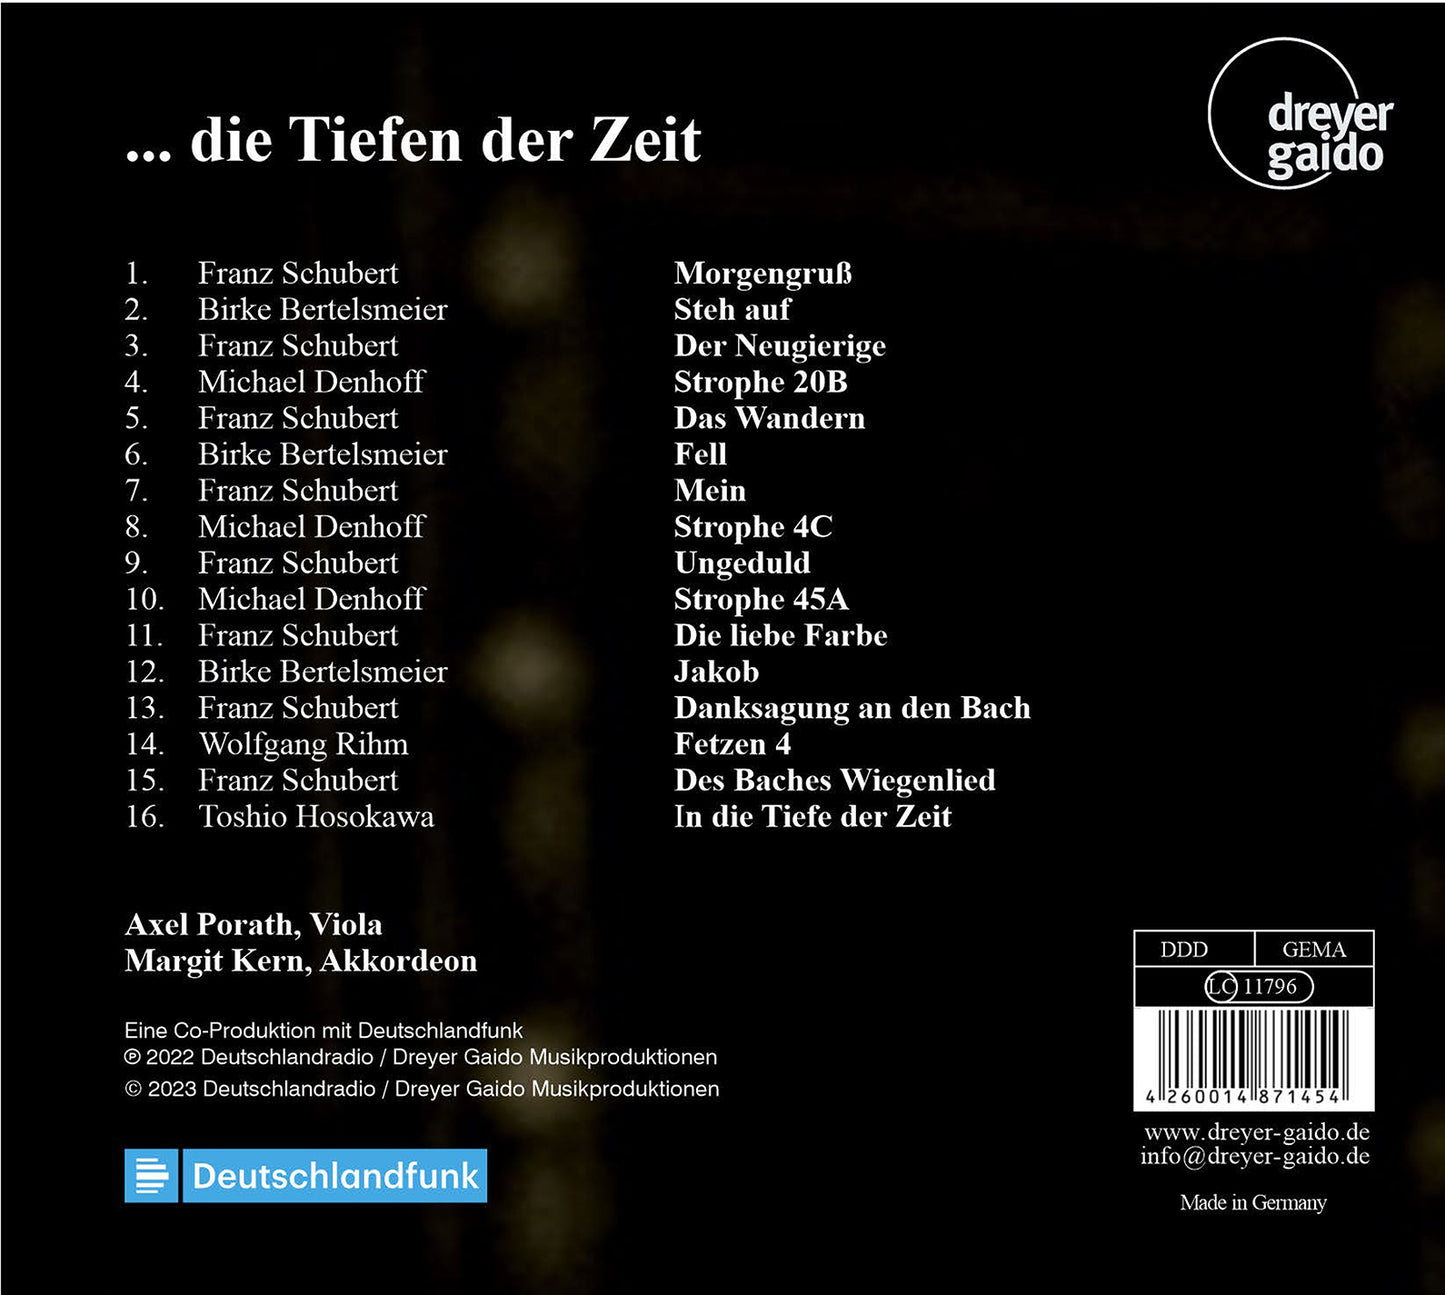 ... die Tiefen der Zeit - Works for Violin & Accordion